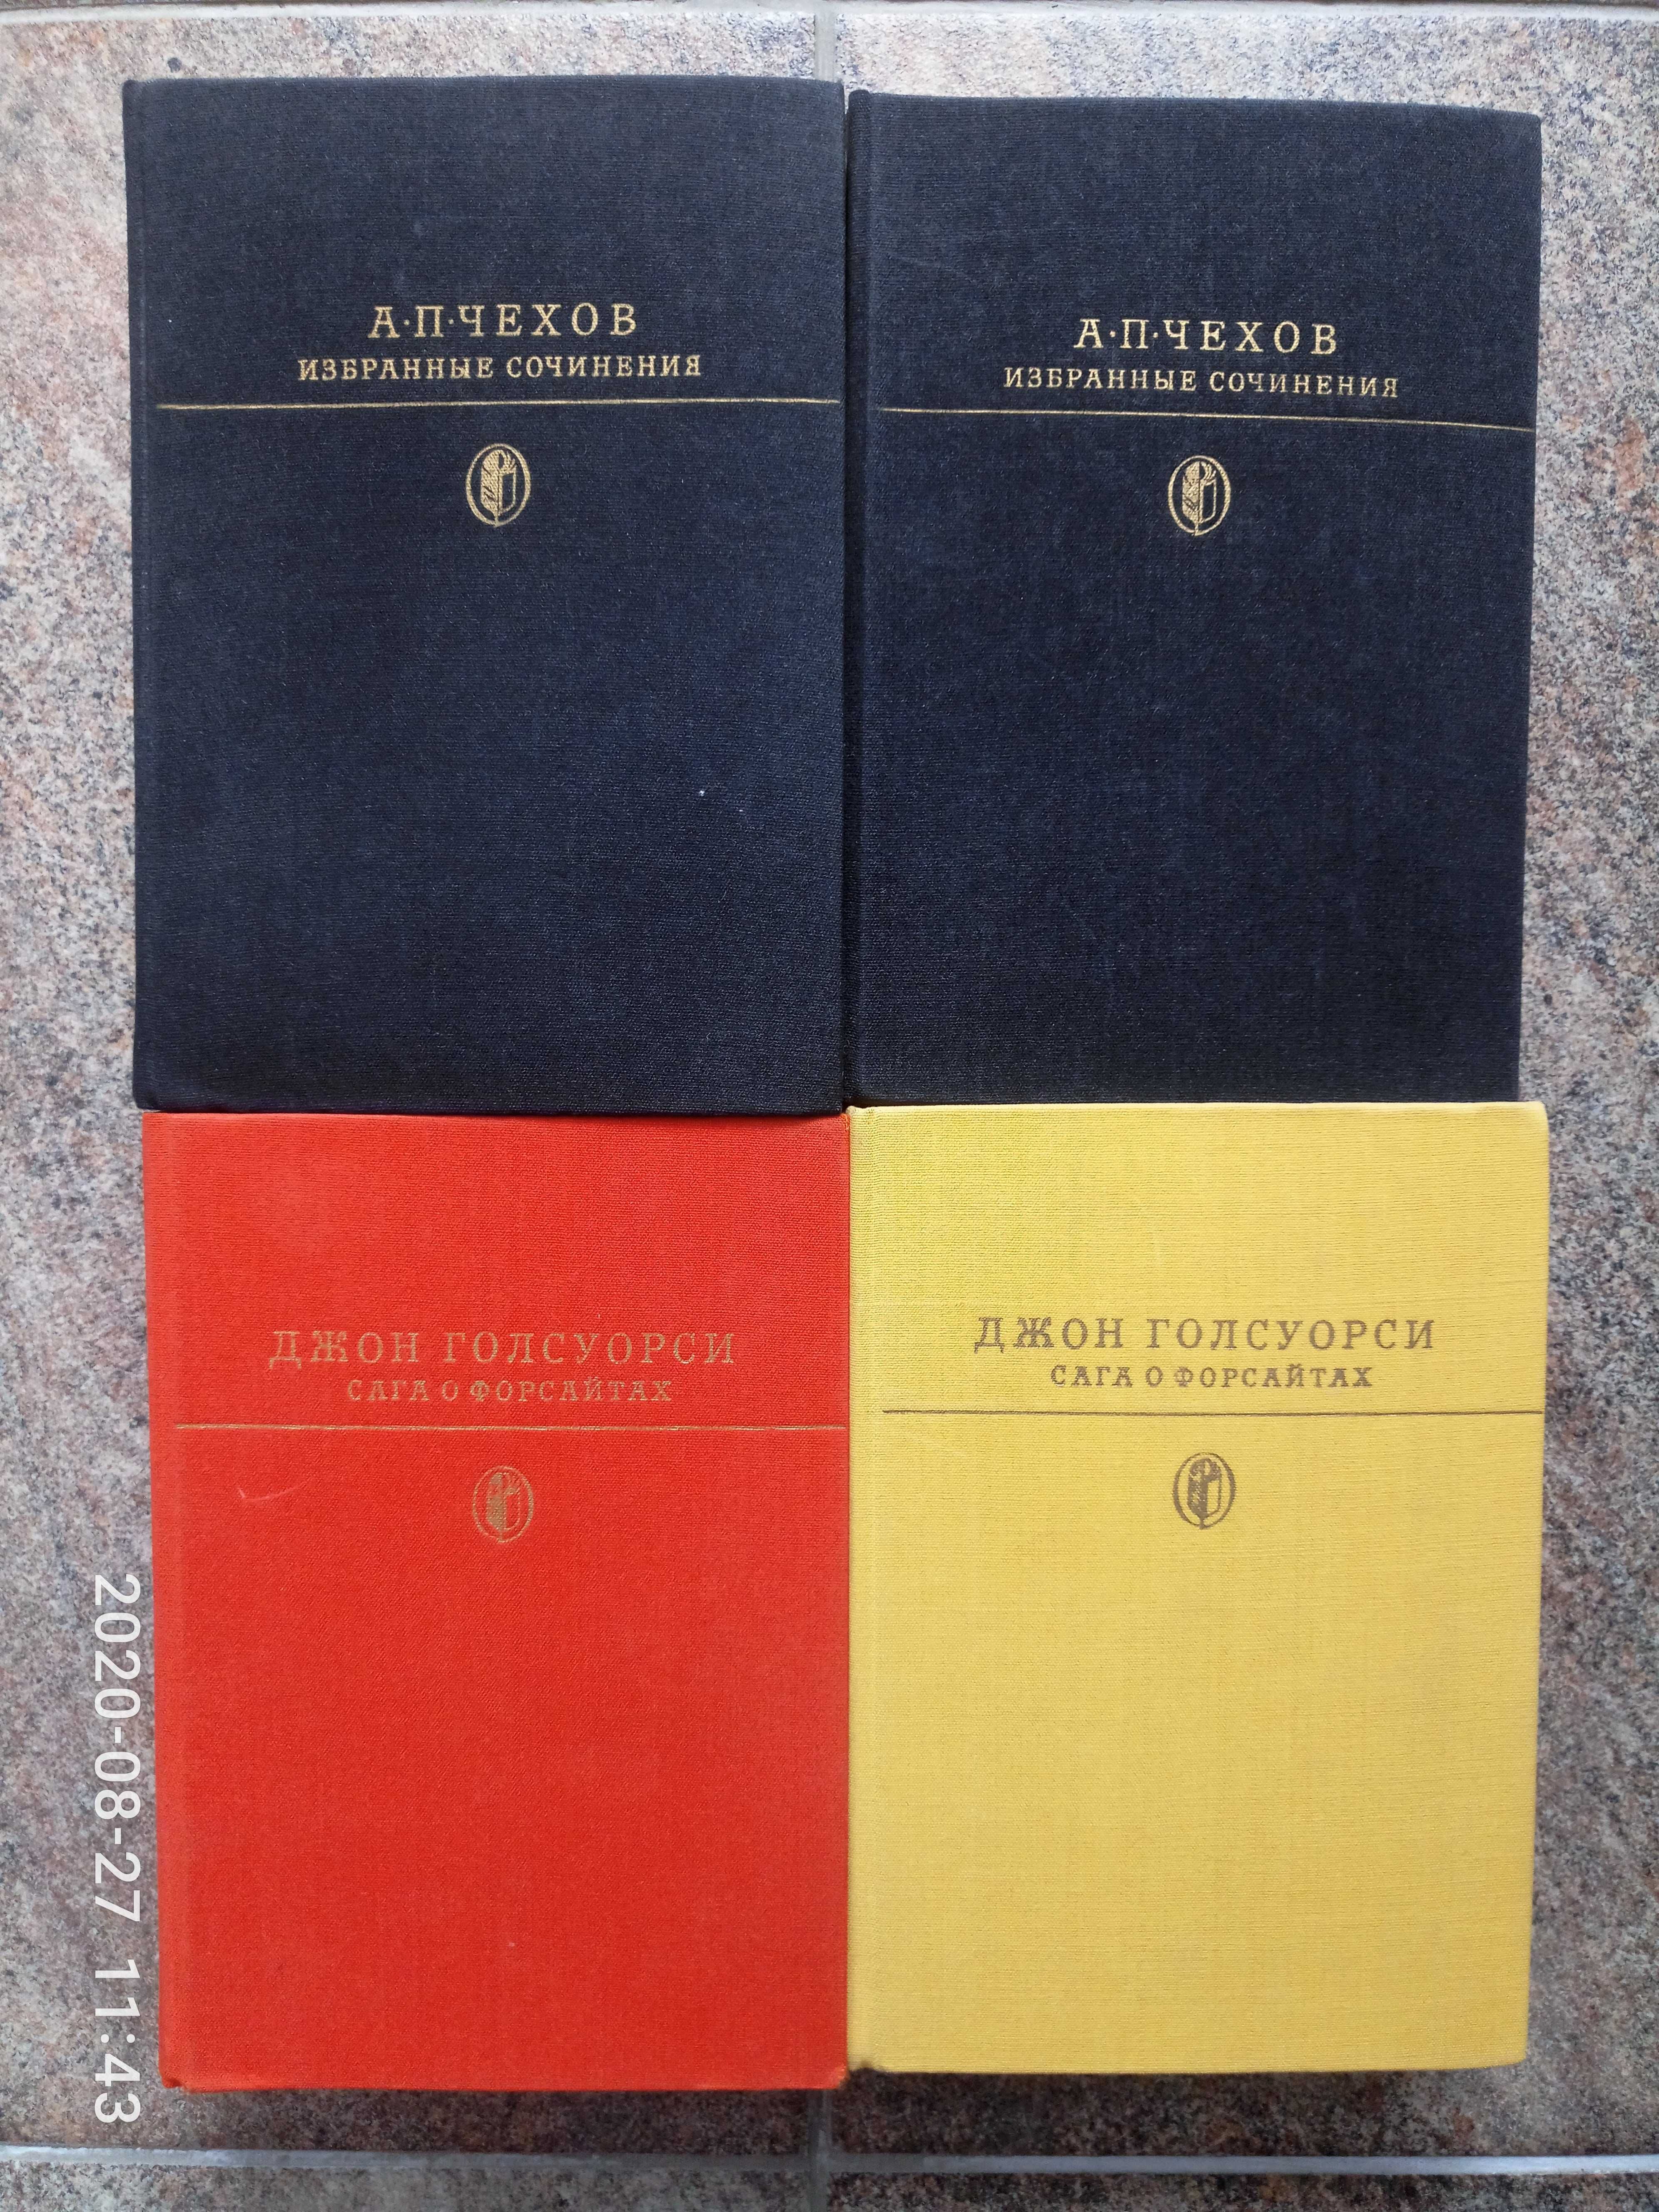 Чехов в 2 томах (1986 )